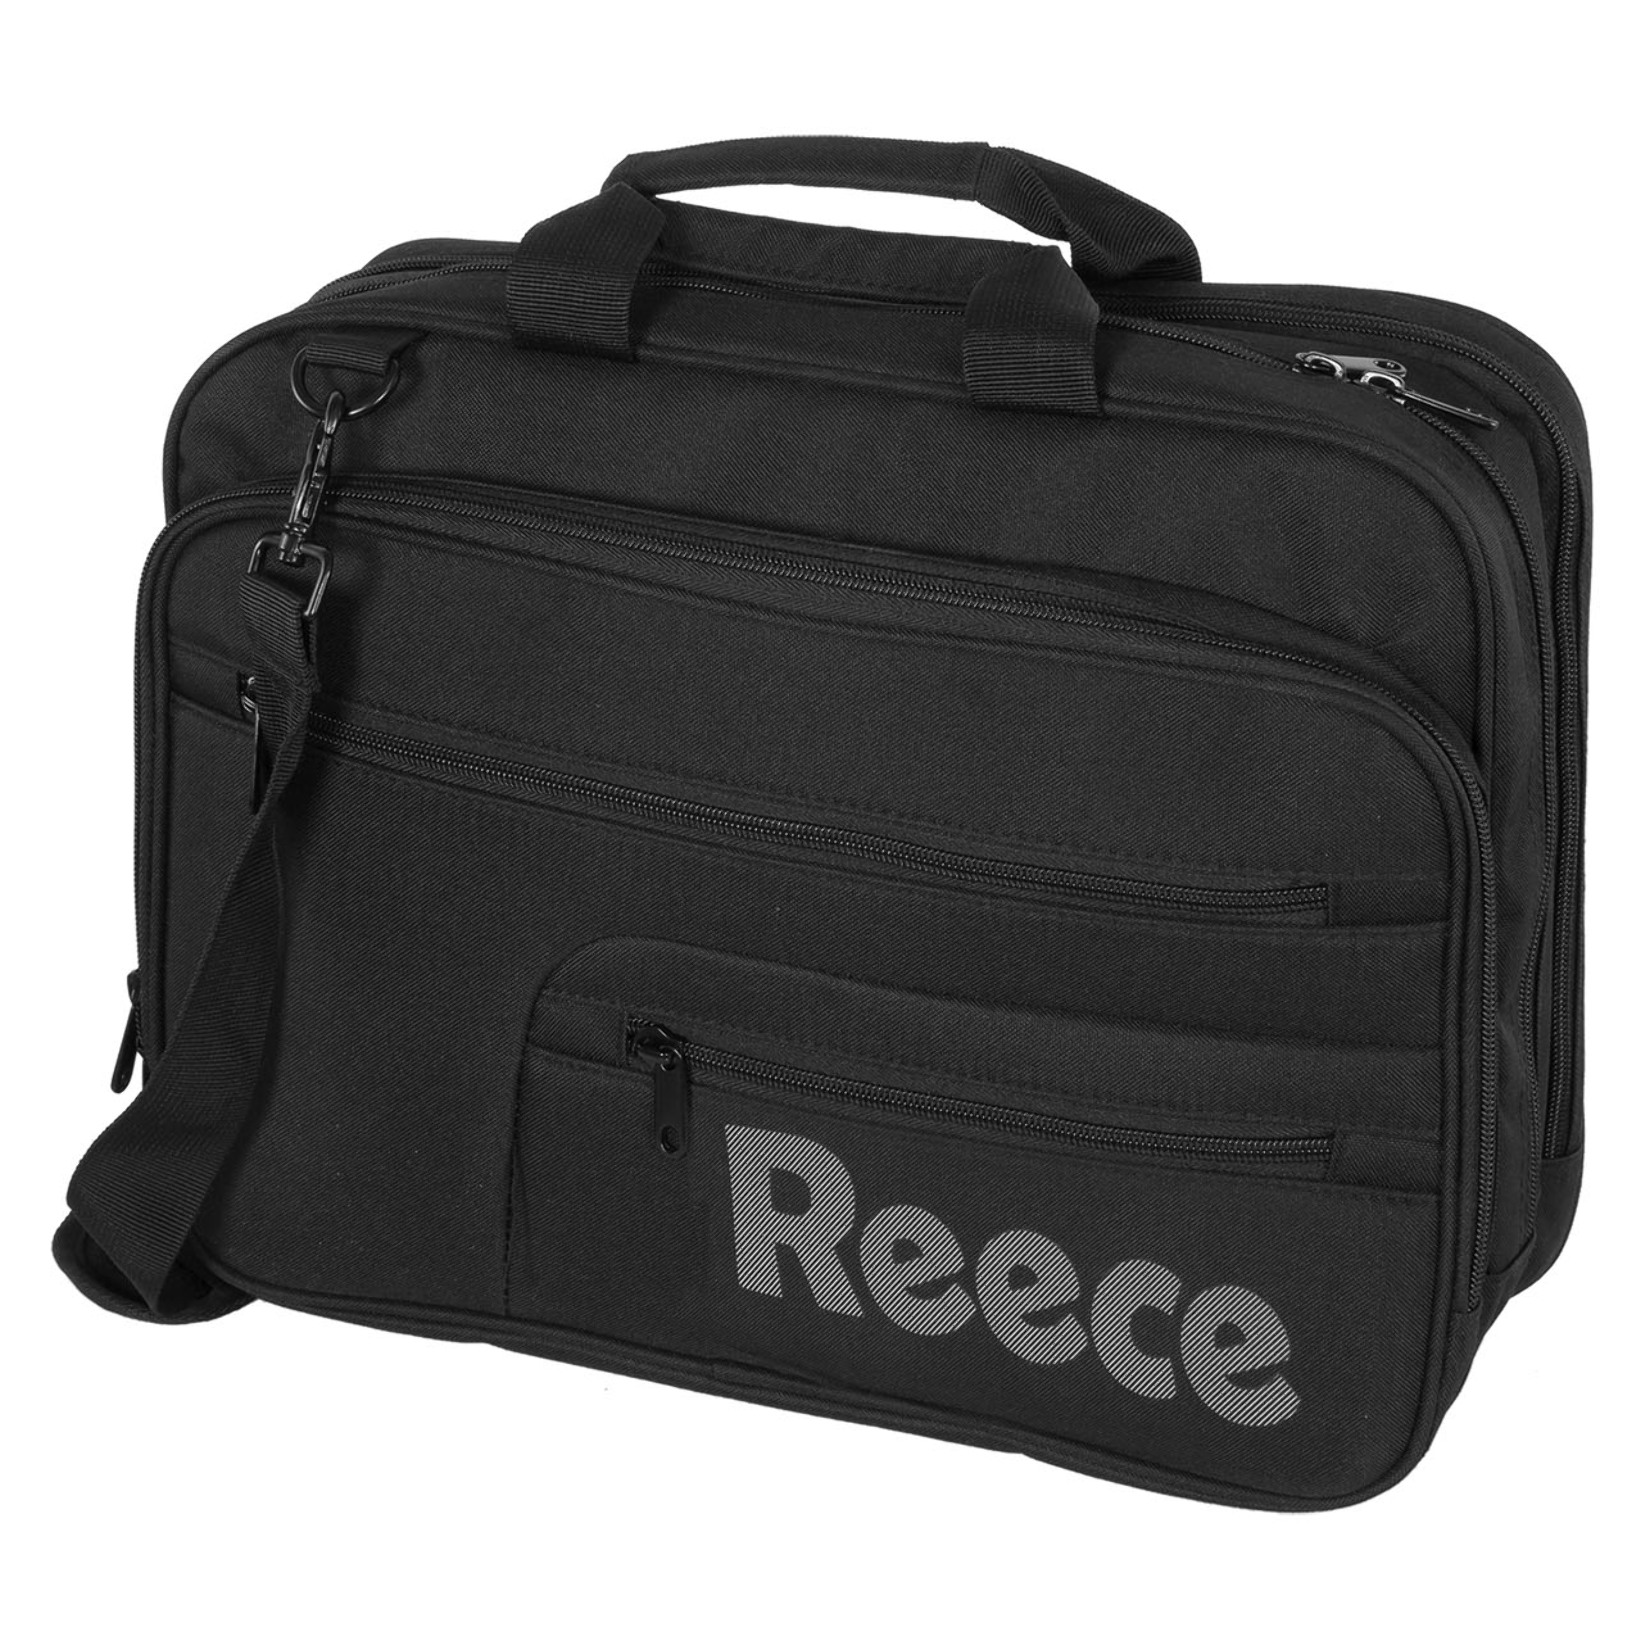 Reece Notebook Bag